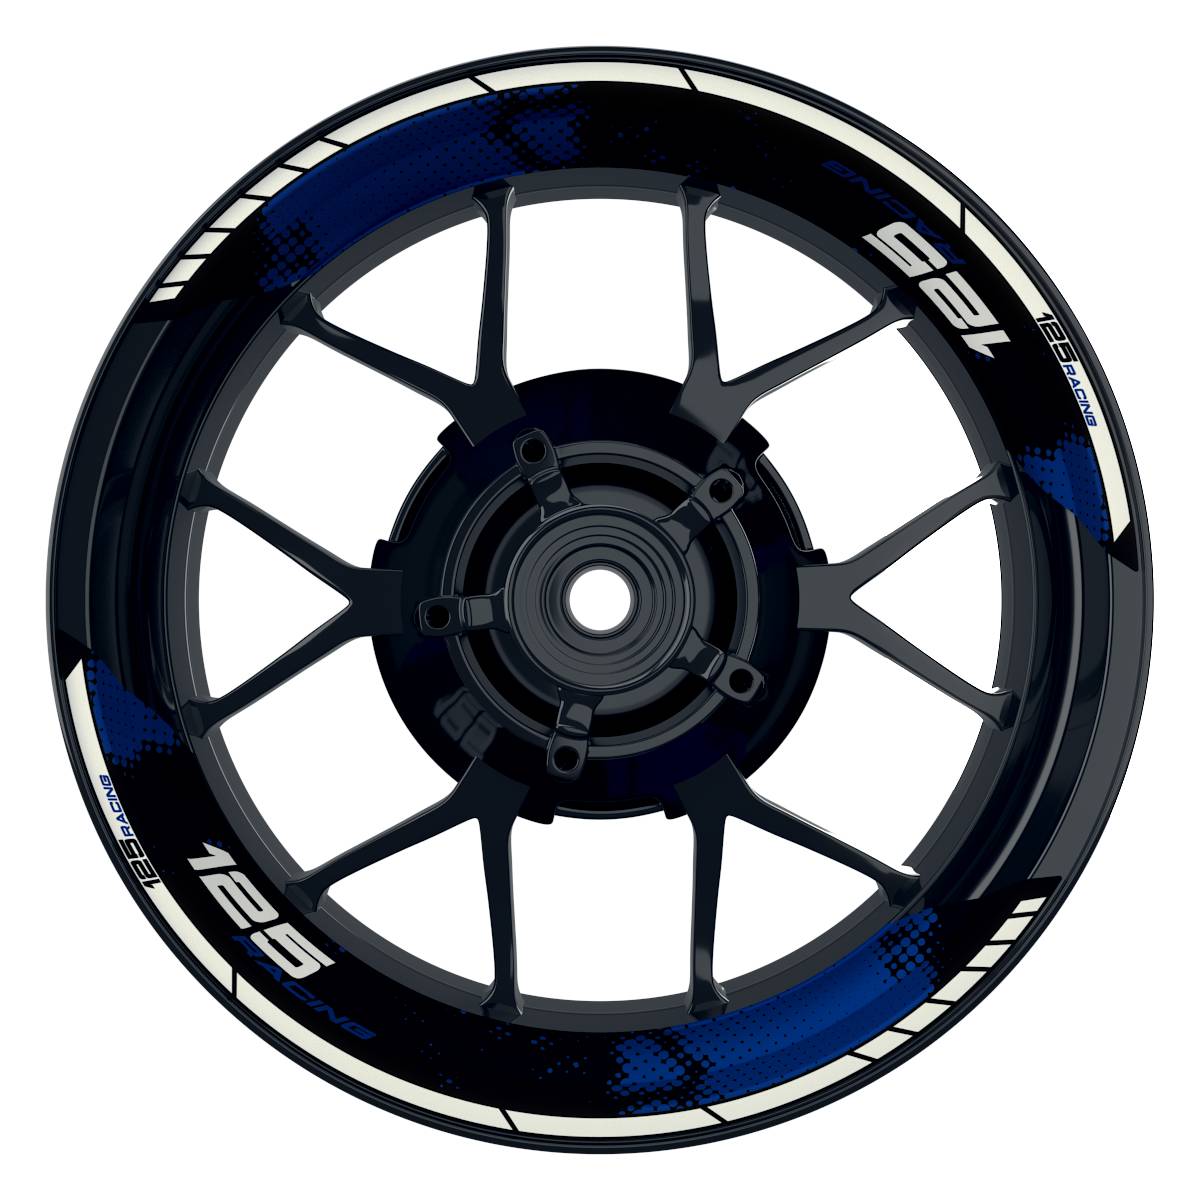 KTM Racing 125 Dots schwarz blau Frontansicht